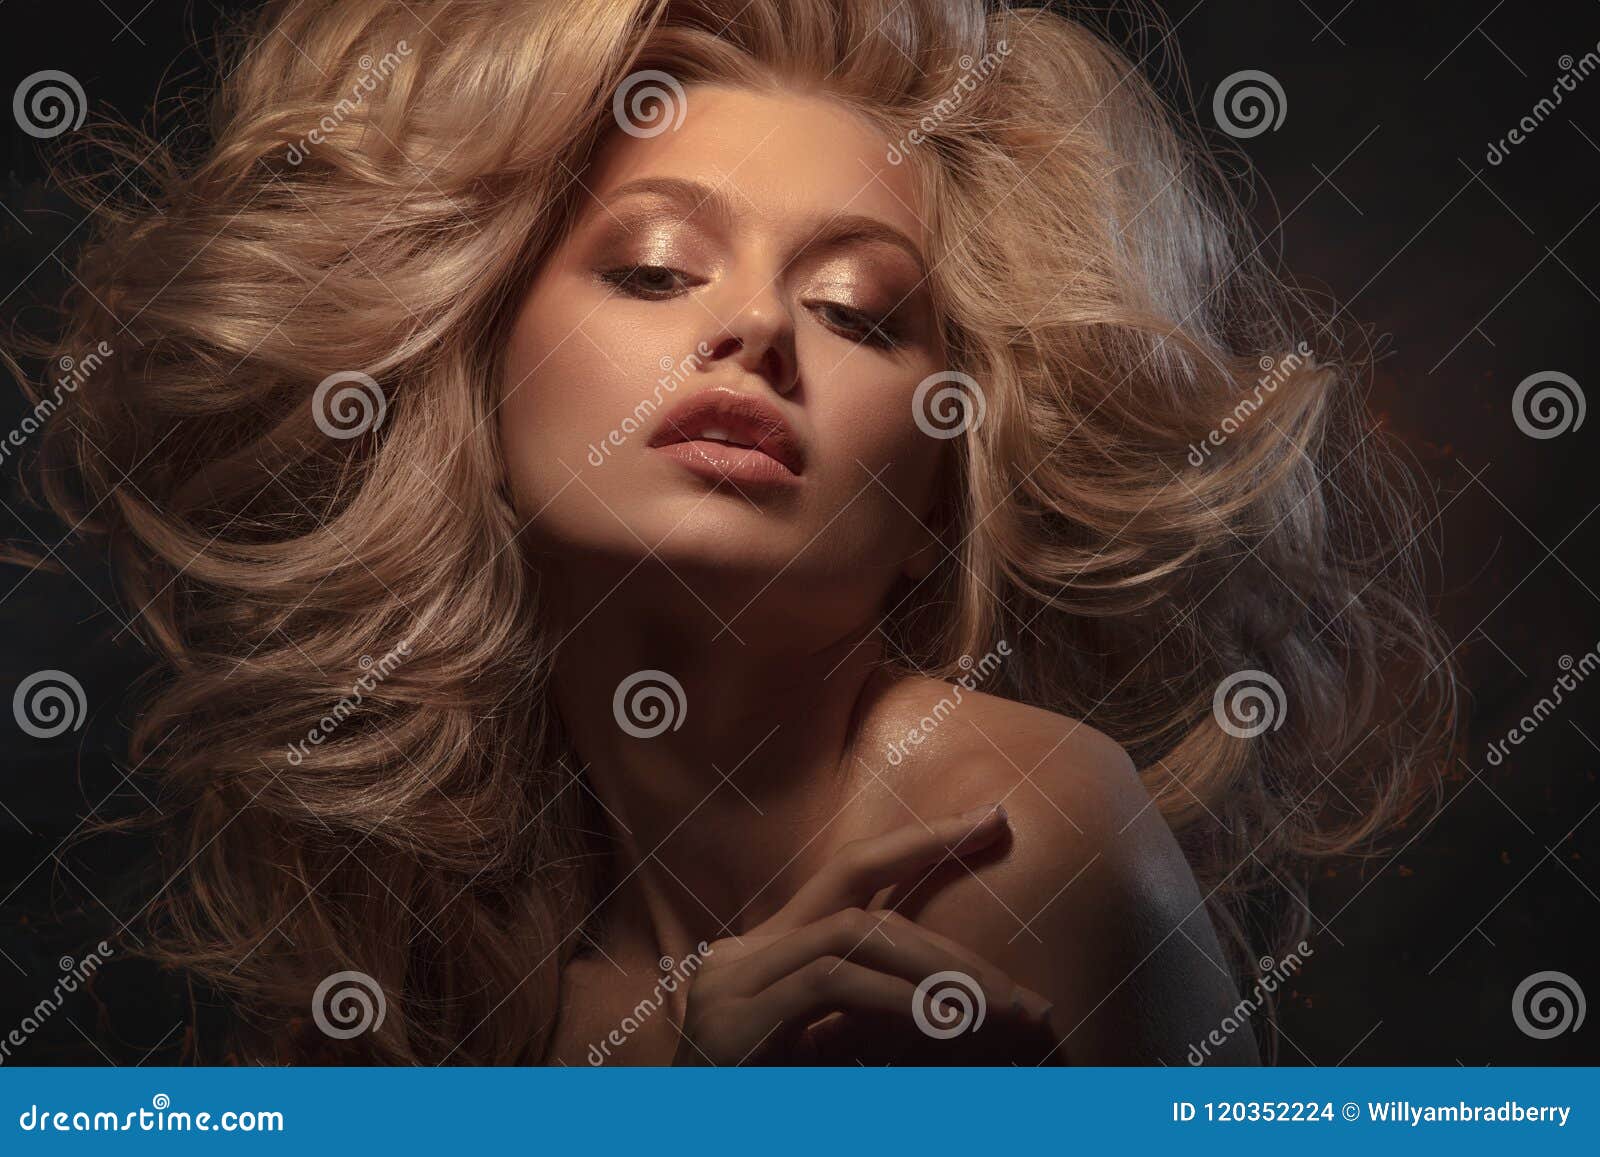 Beauty Headshot of Fashion Blonde Model Stock Photo - Image of ...